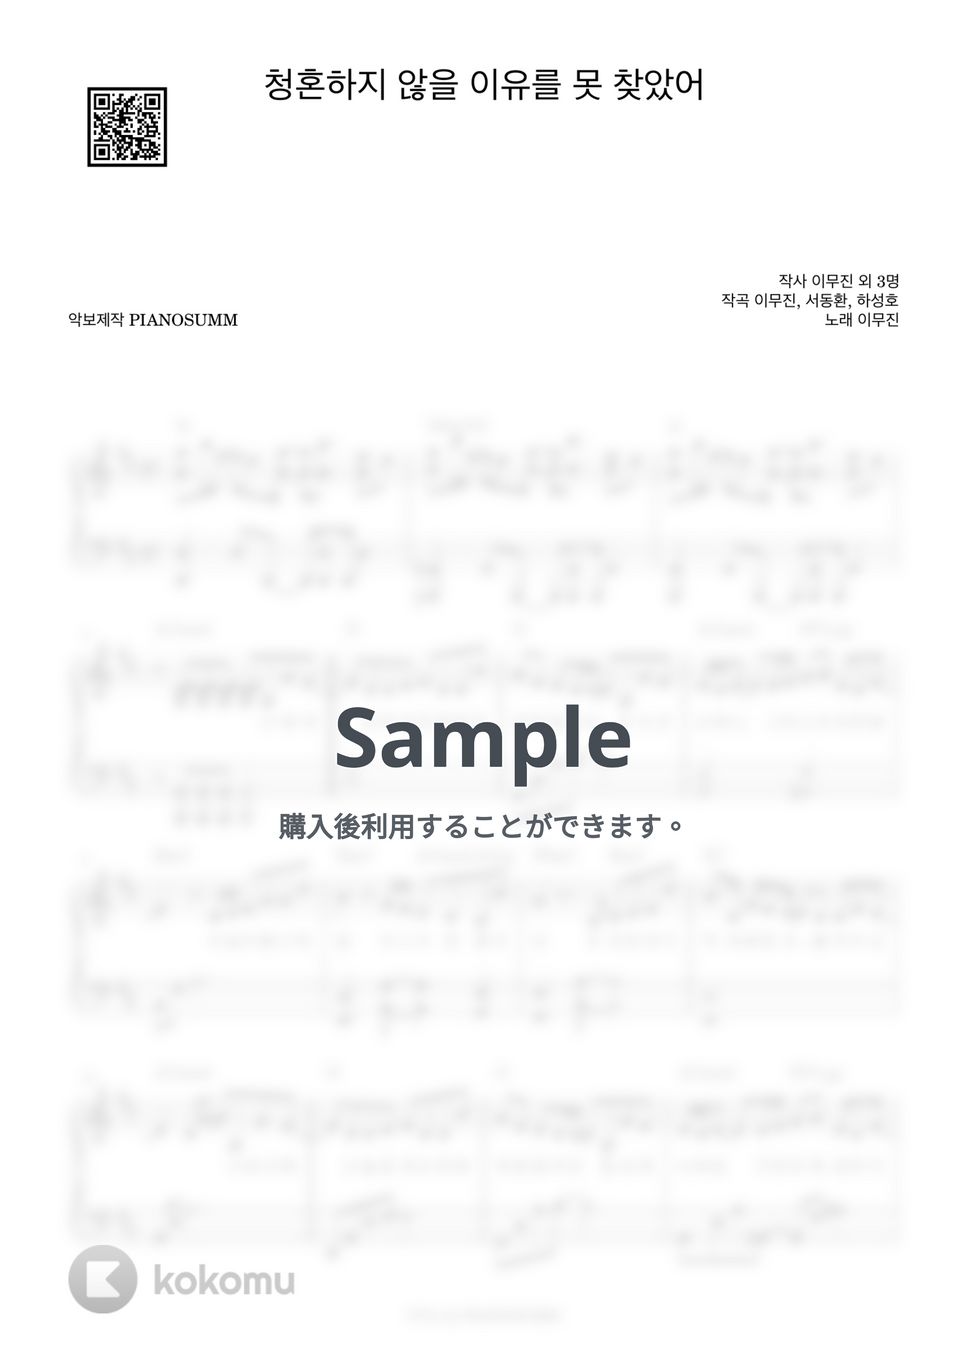 イ・ムジン - Propose by PIANOSUMM